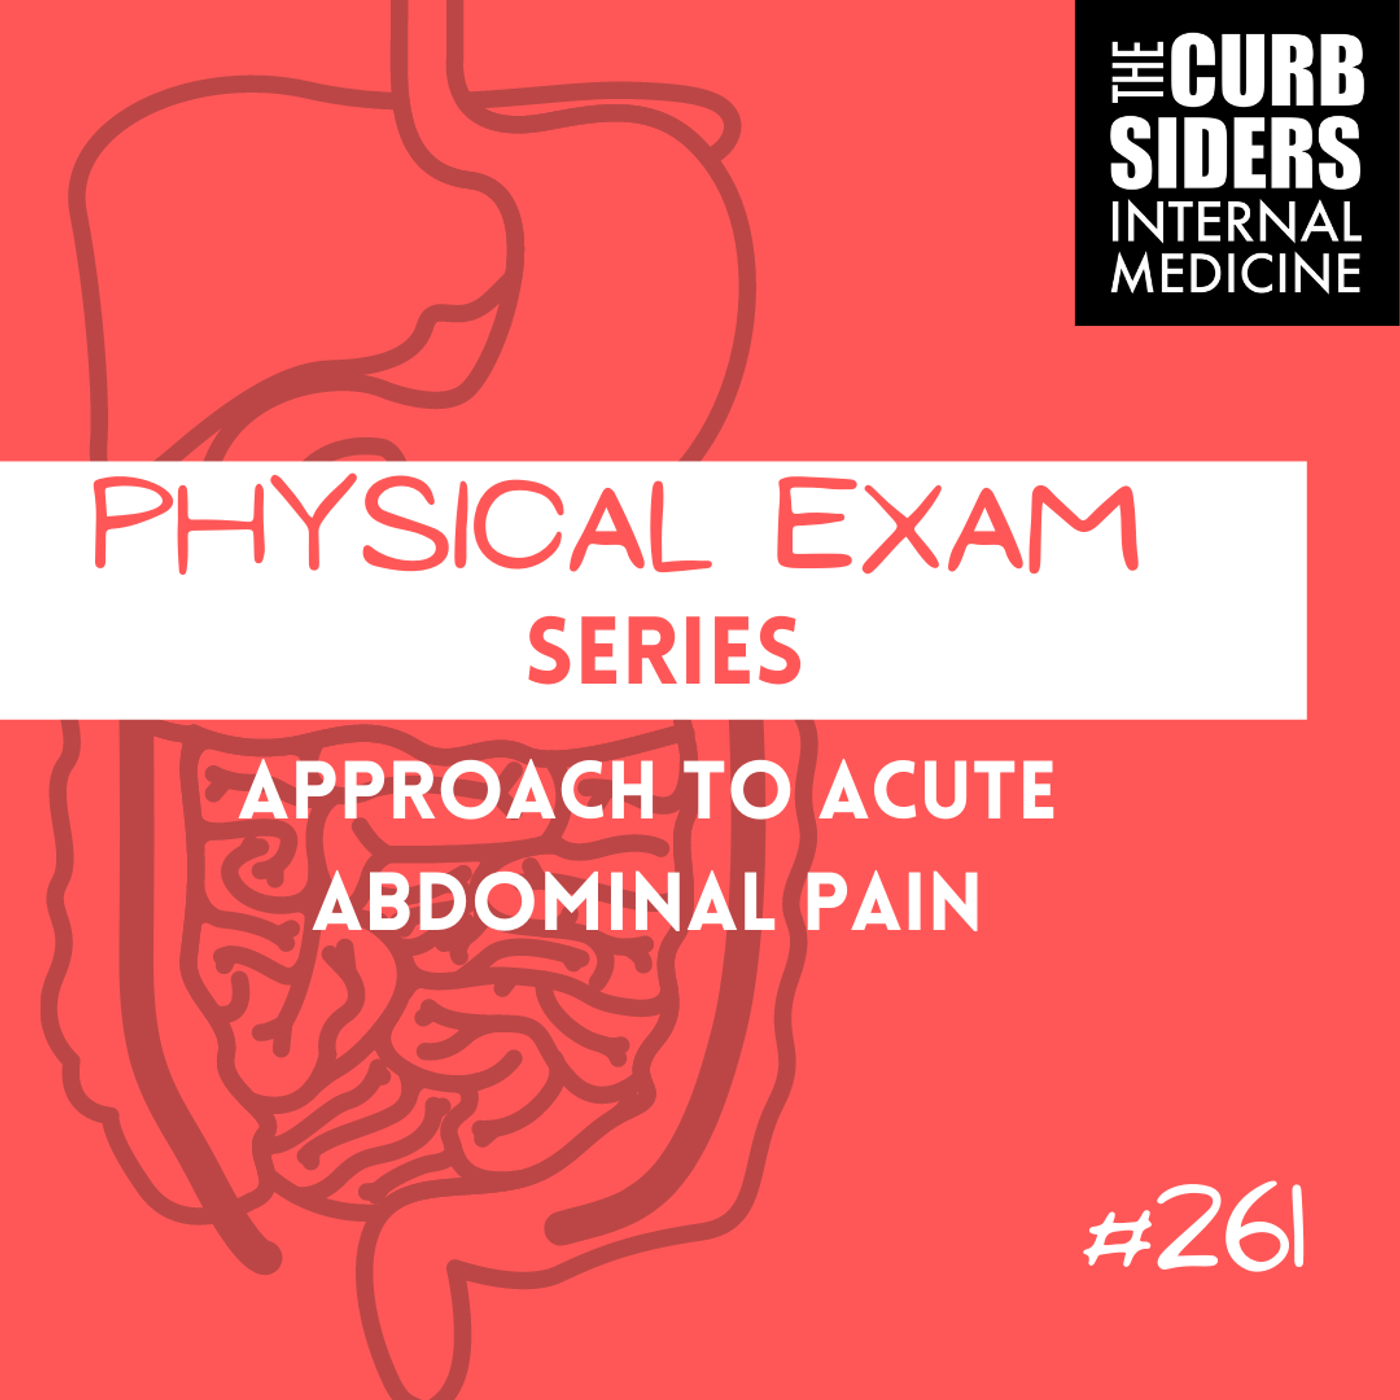 #261 Acute Abdominal Pain: Physical Exam Series